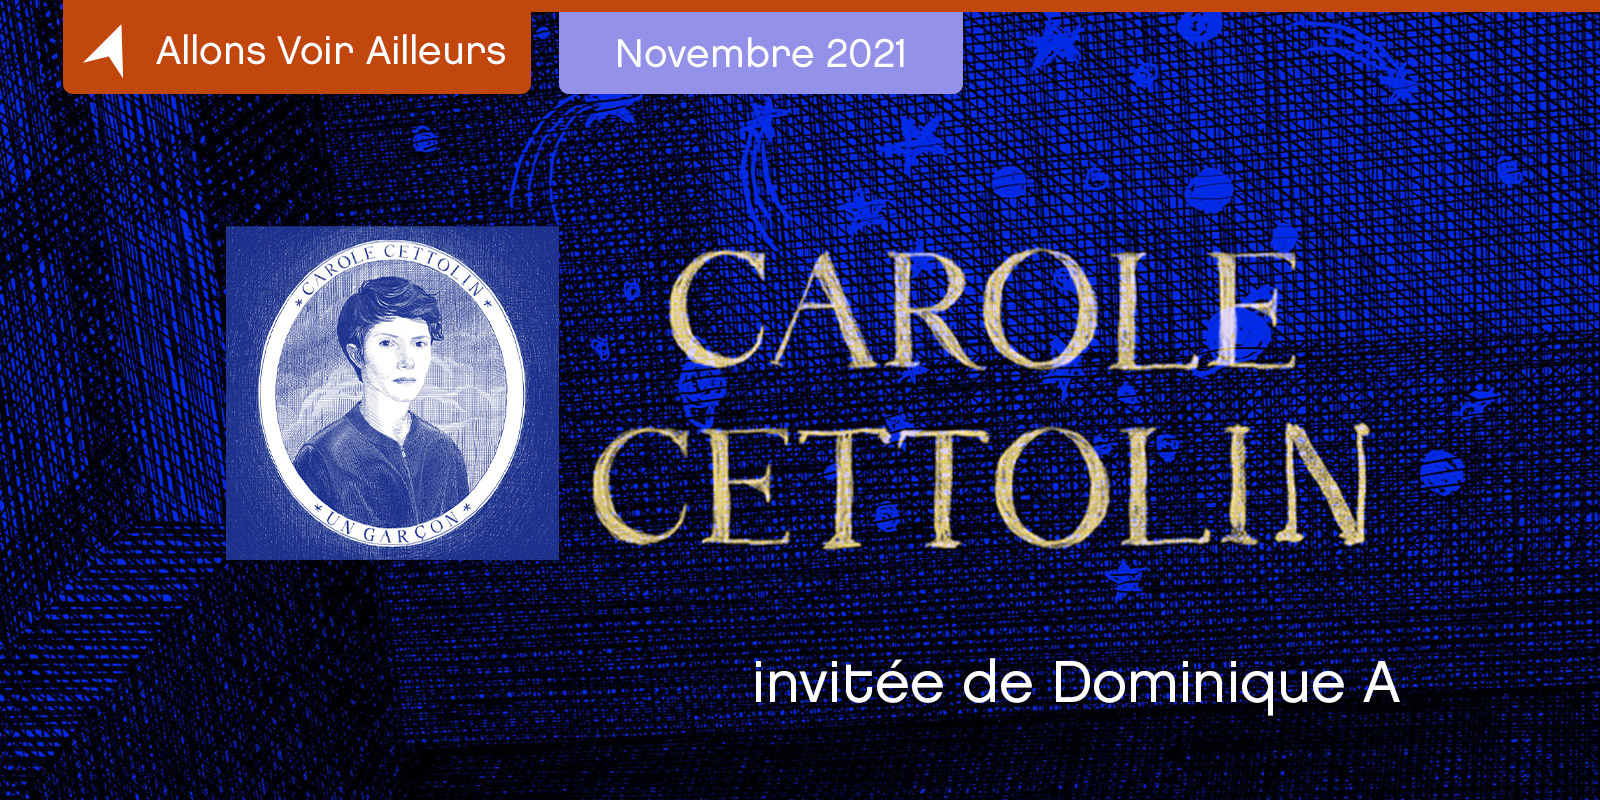 Allons Voir Ailleurs Carole Cetolin invitée de Dominique A